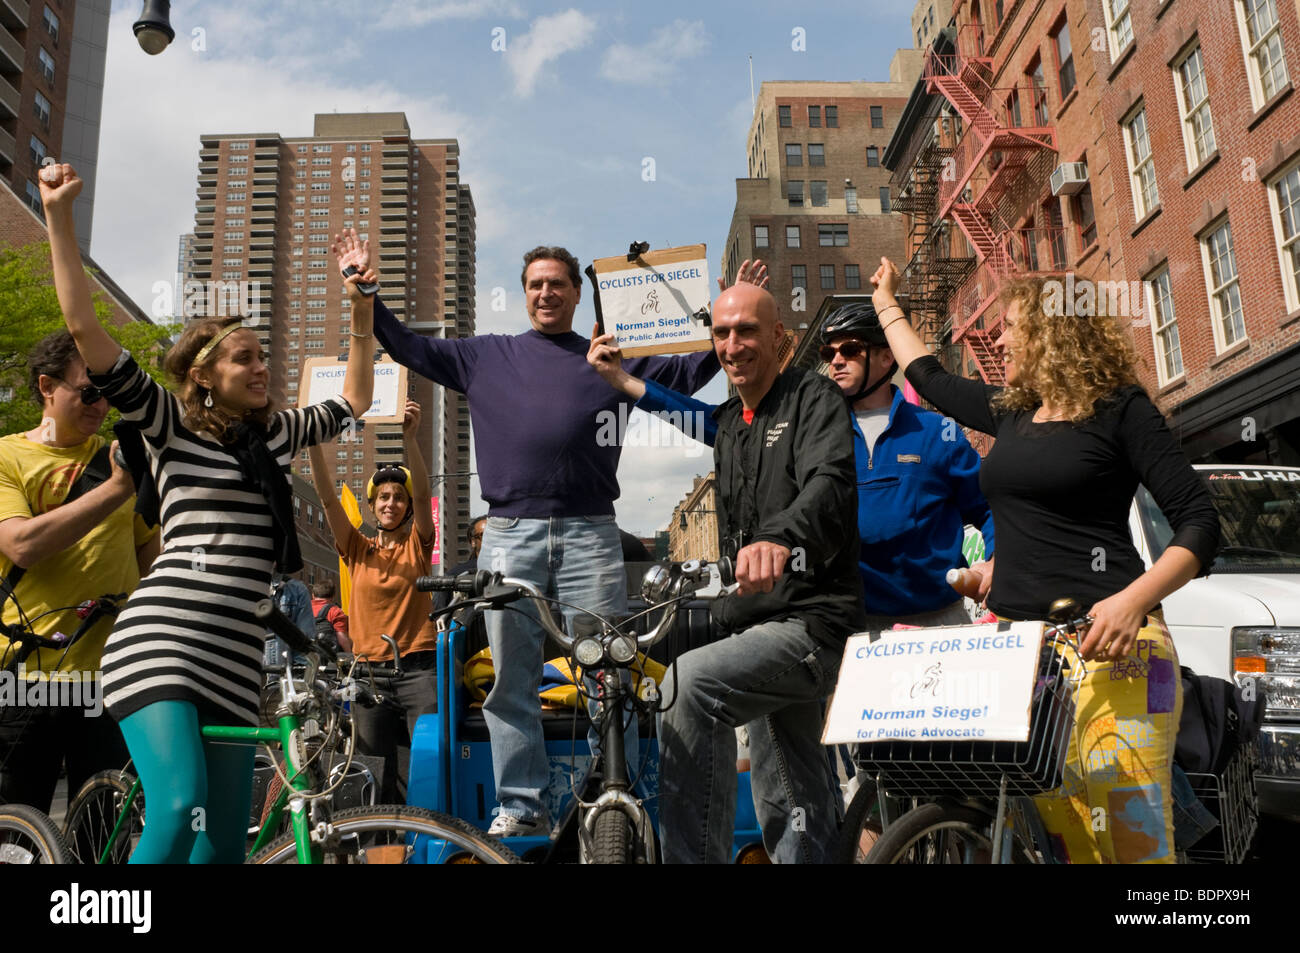 New York, NY Norman Siegel, candidat democrate pour la promotion publique au cours d'une campagne intitulée Les cyclistes pour Norman Siegel Banque D'Images